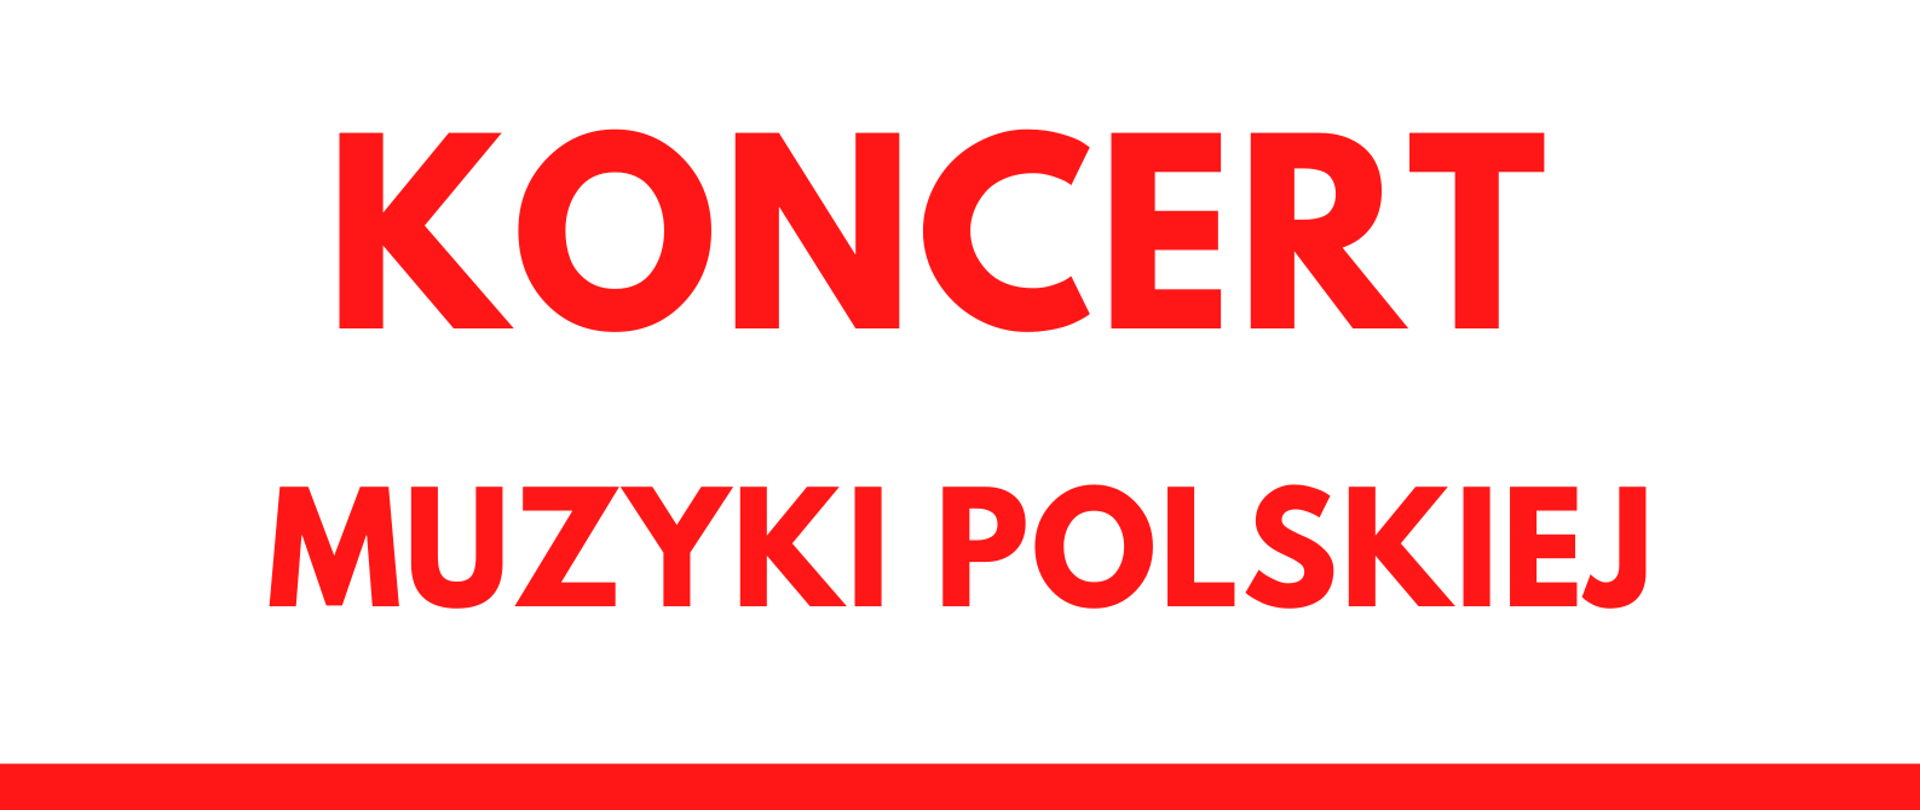 Plakat w kolorystyce biało czerwonej informujący o Koncercie Muzyki Polskiej z okazji Narodowego Święta Niepodległości